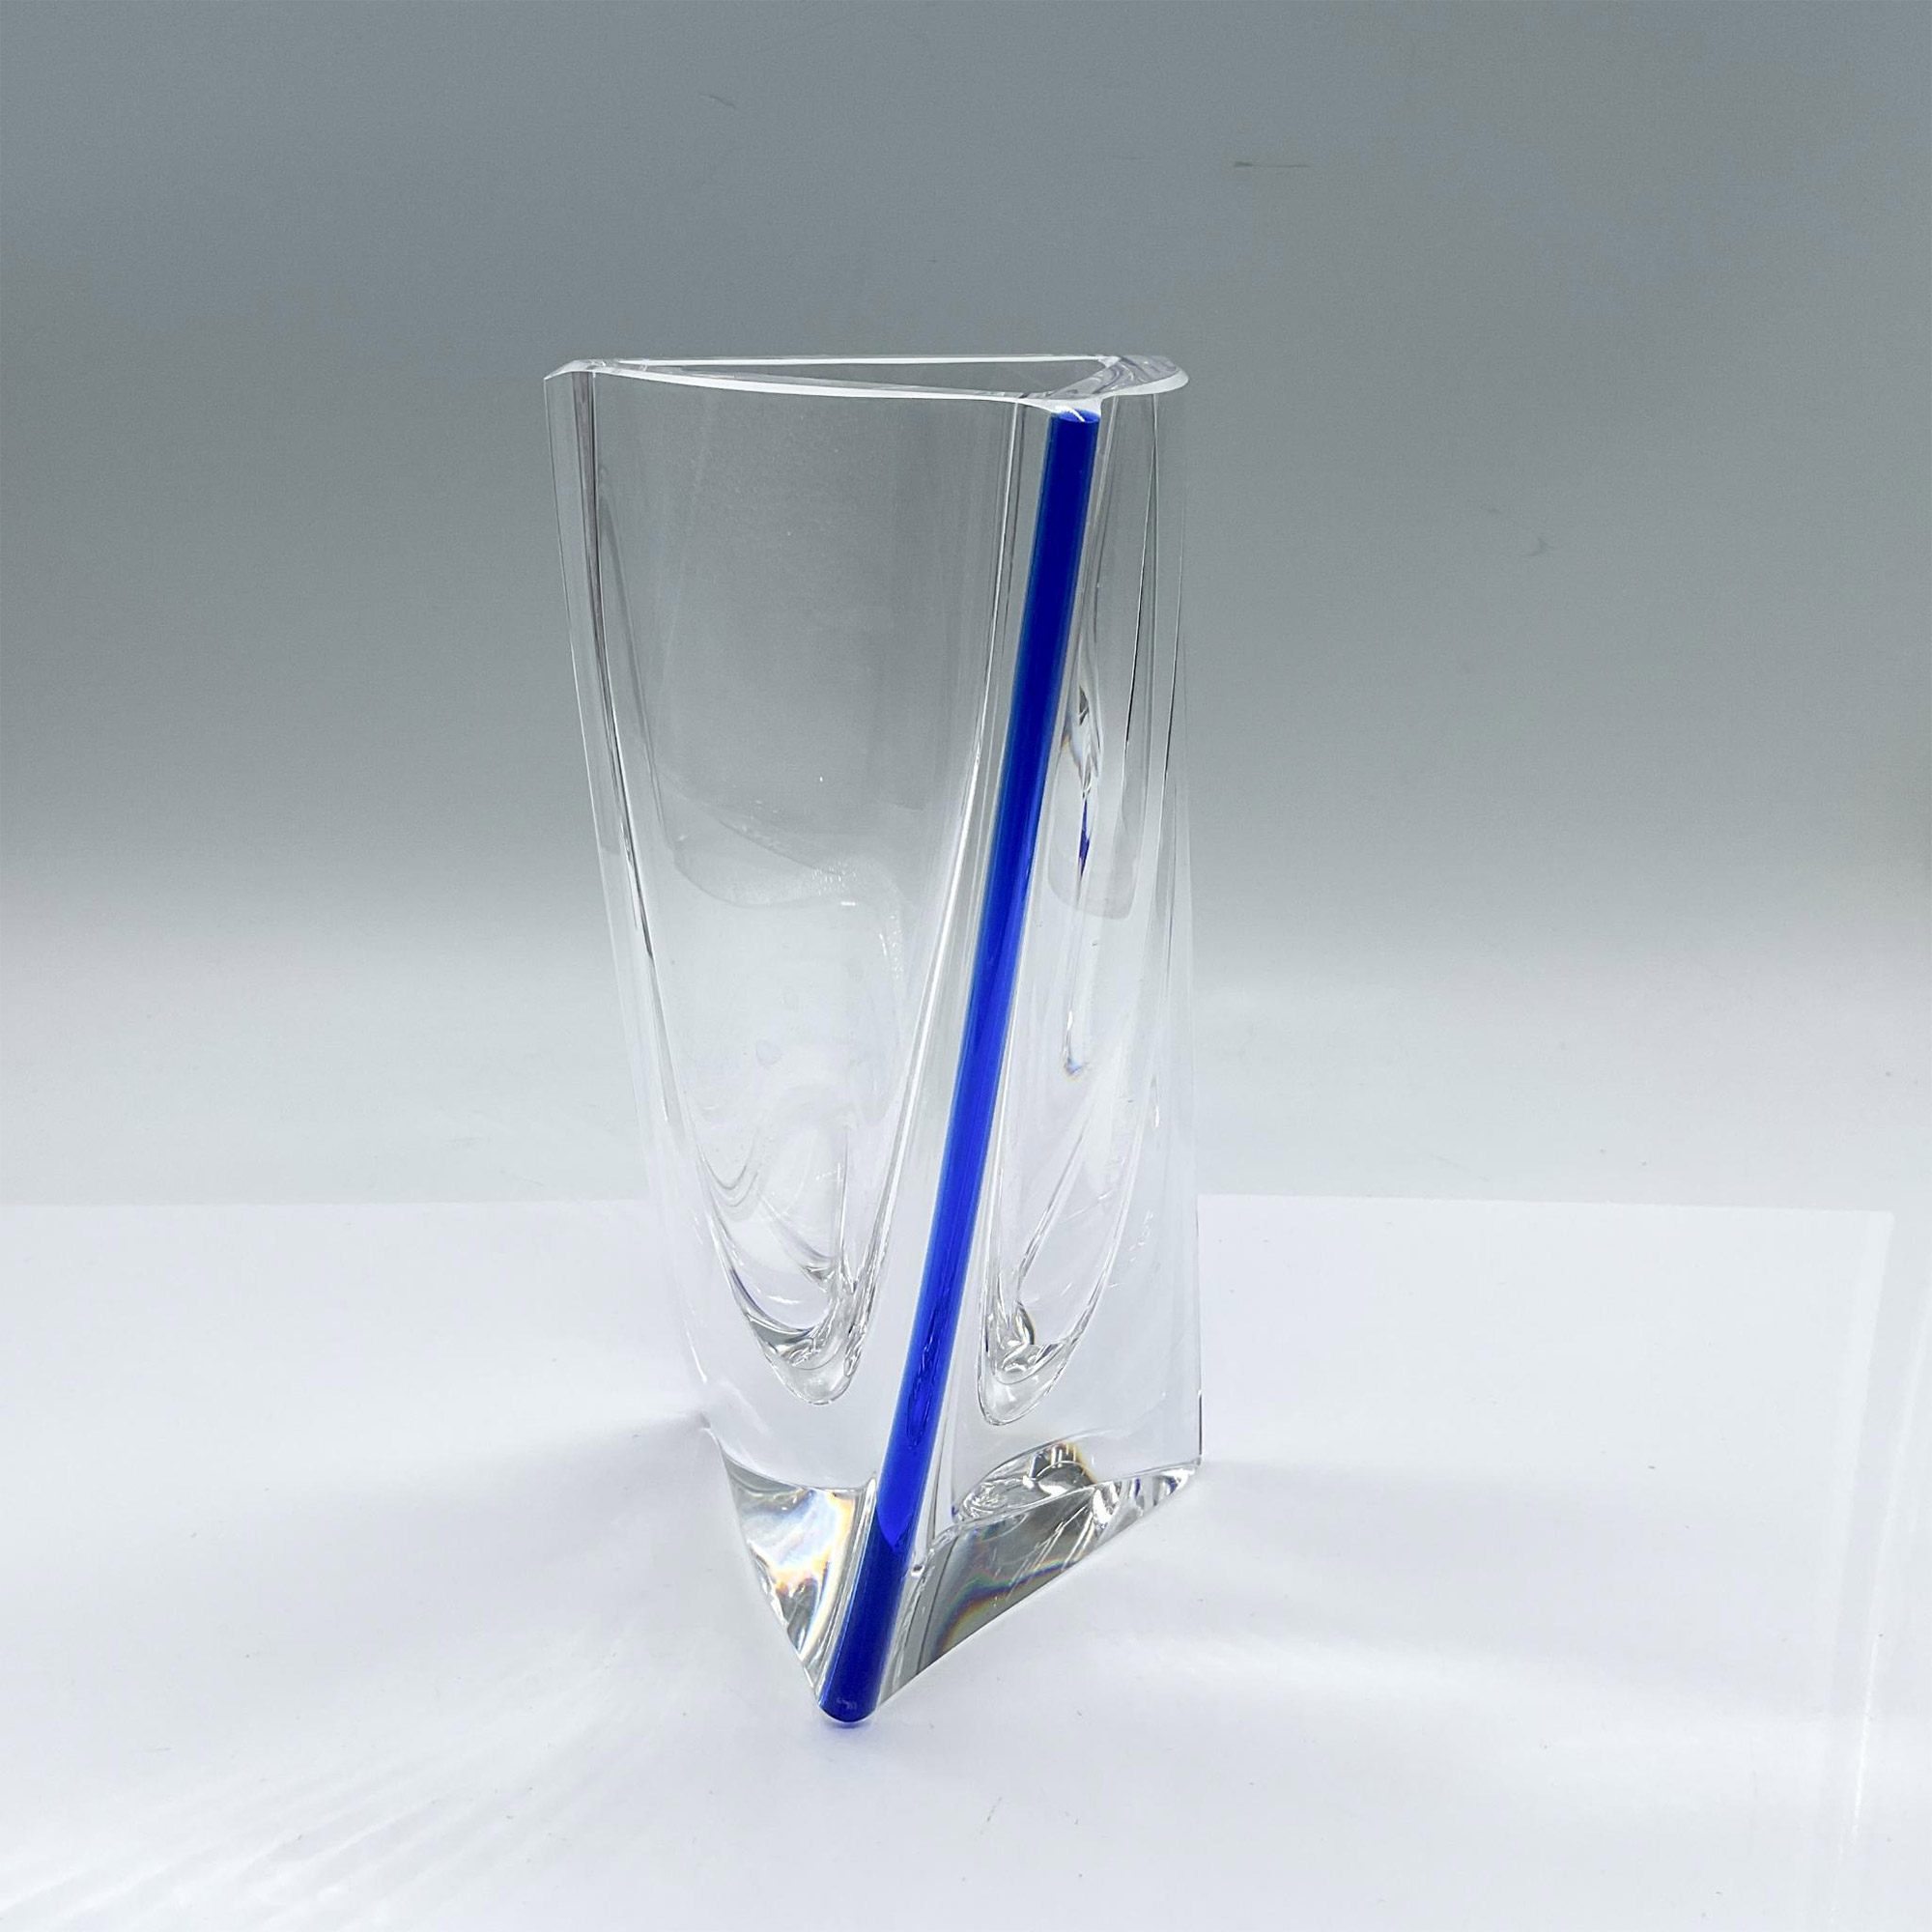 Kosta Boda by Goran Warff Glass Triangular Vase - Image 3 of 4